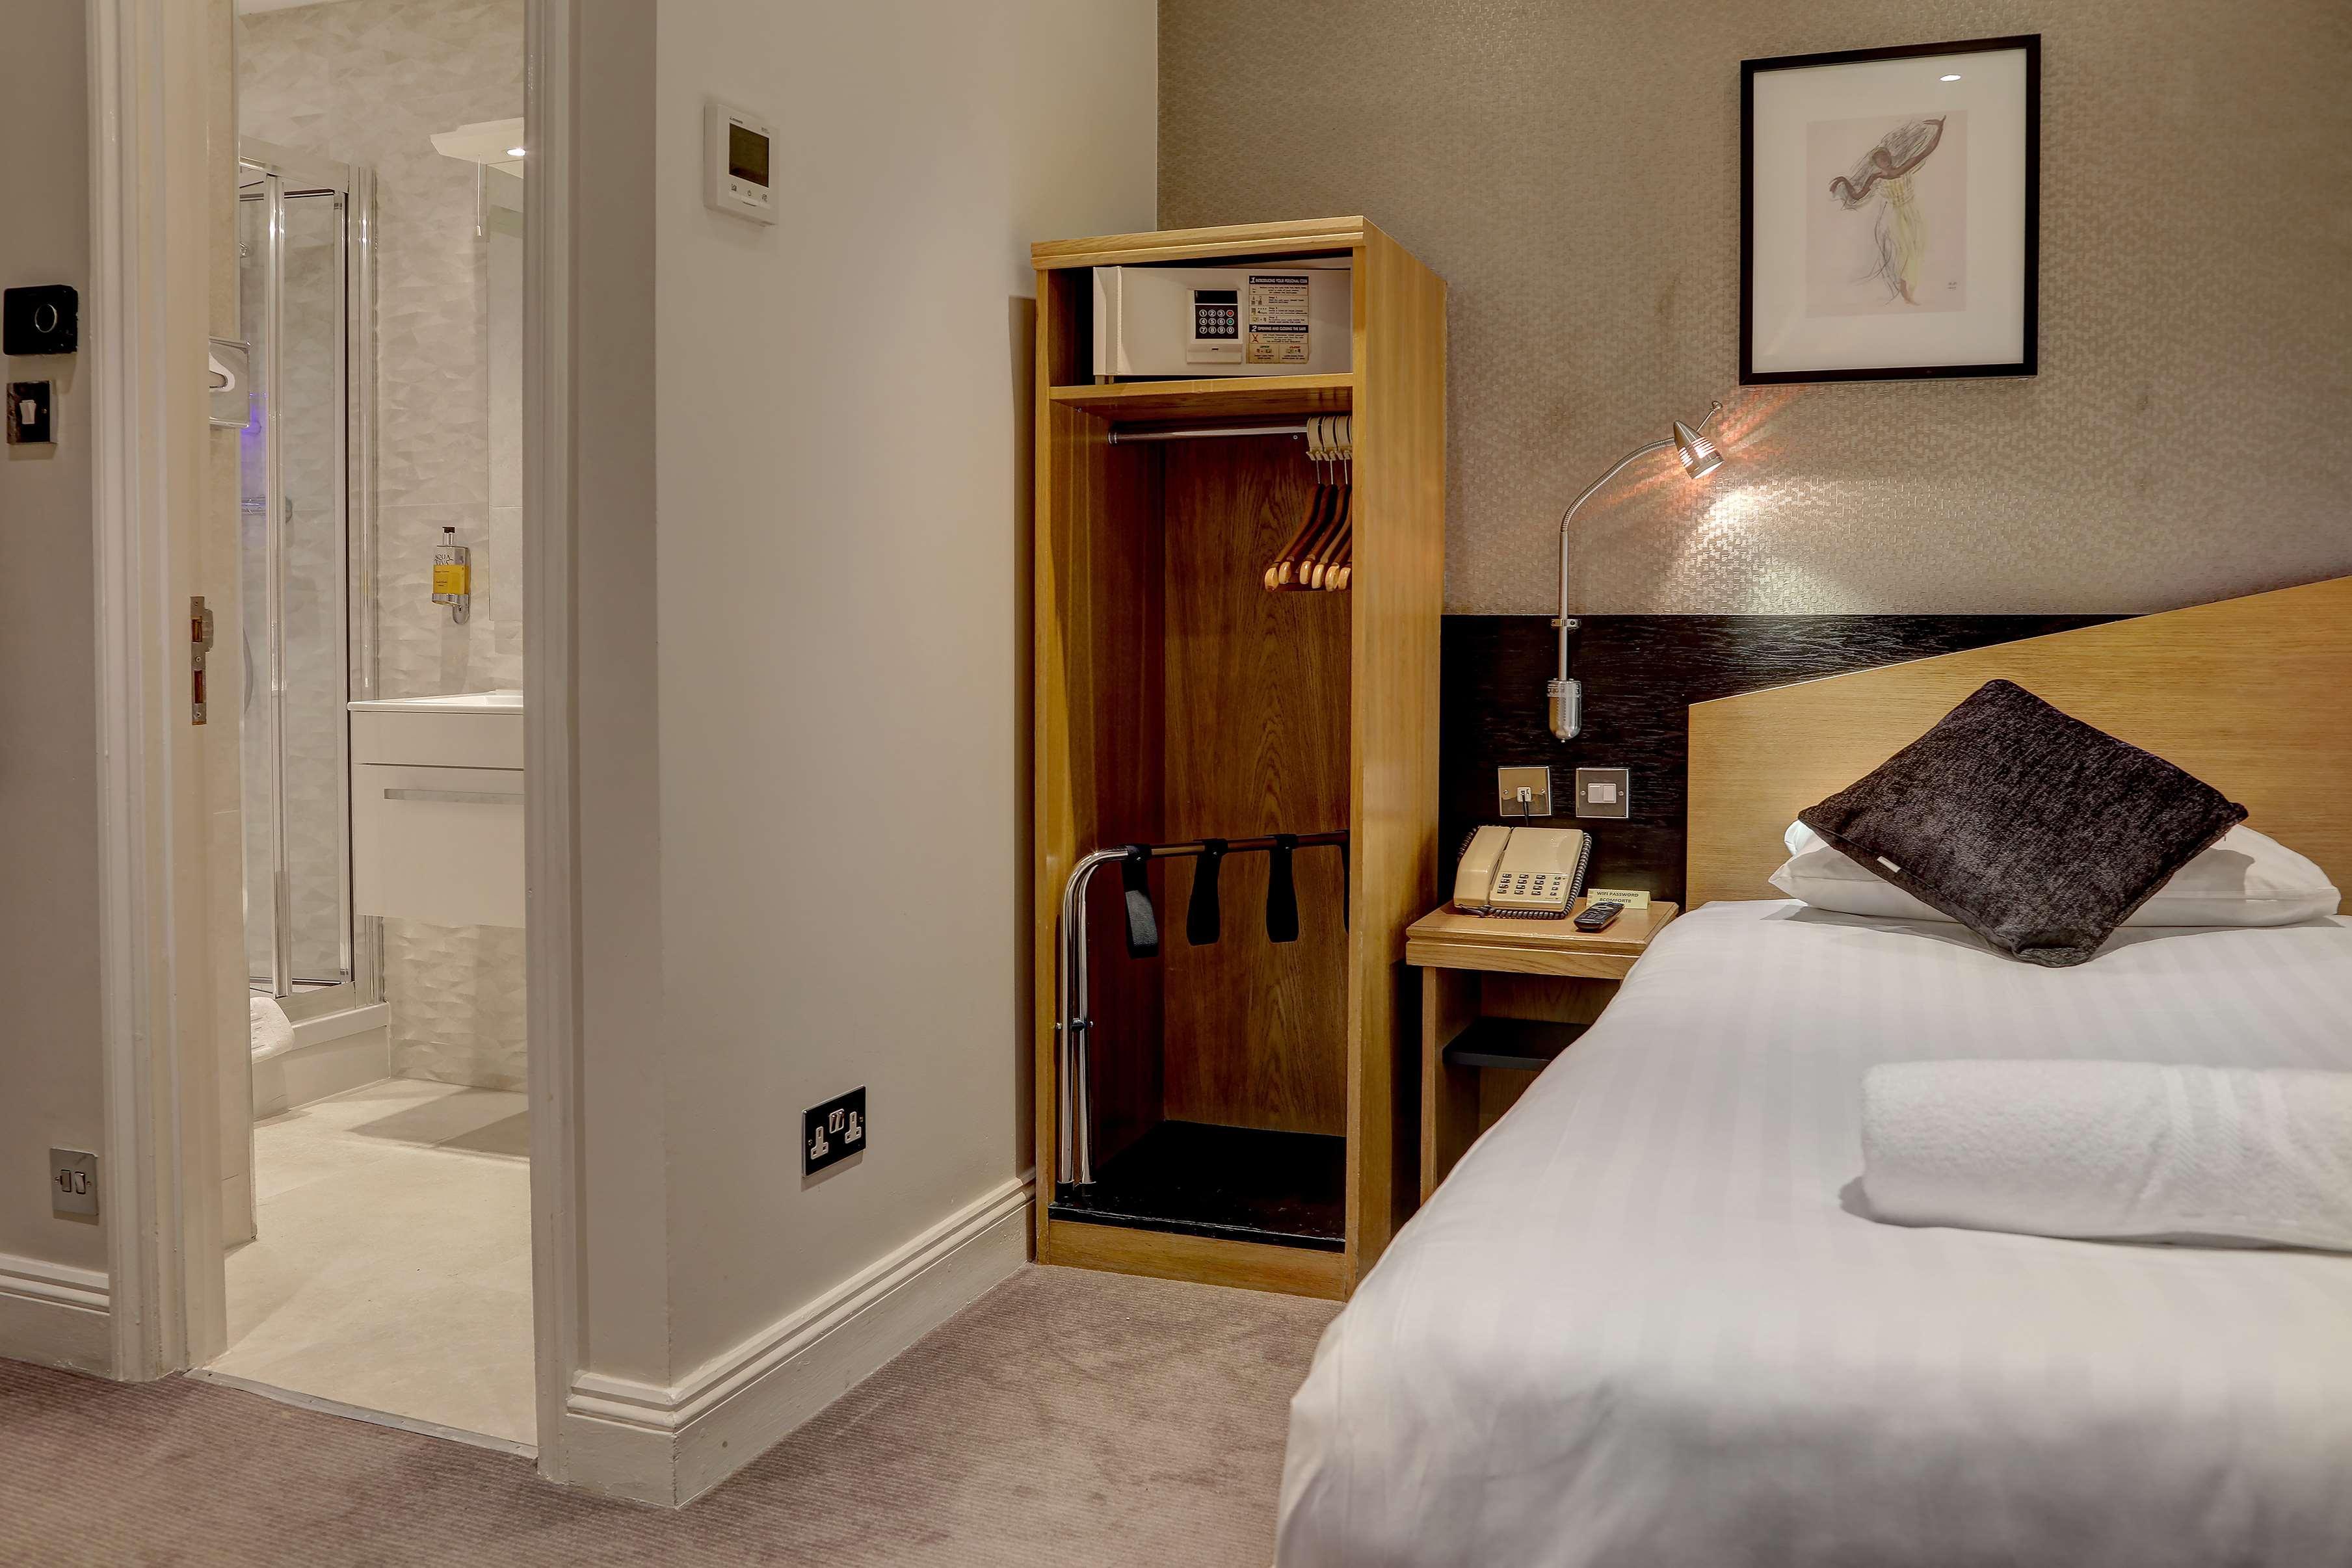 베스트웨스턴 버킹엄 팰리스 로드 호텔 런던 객실 사진